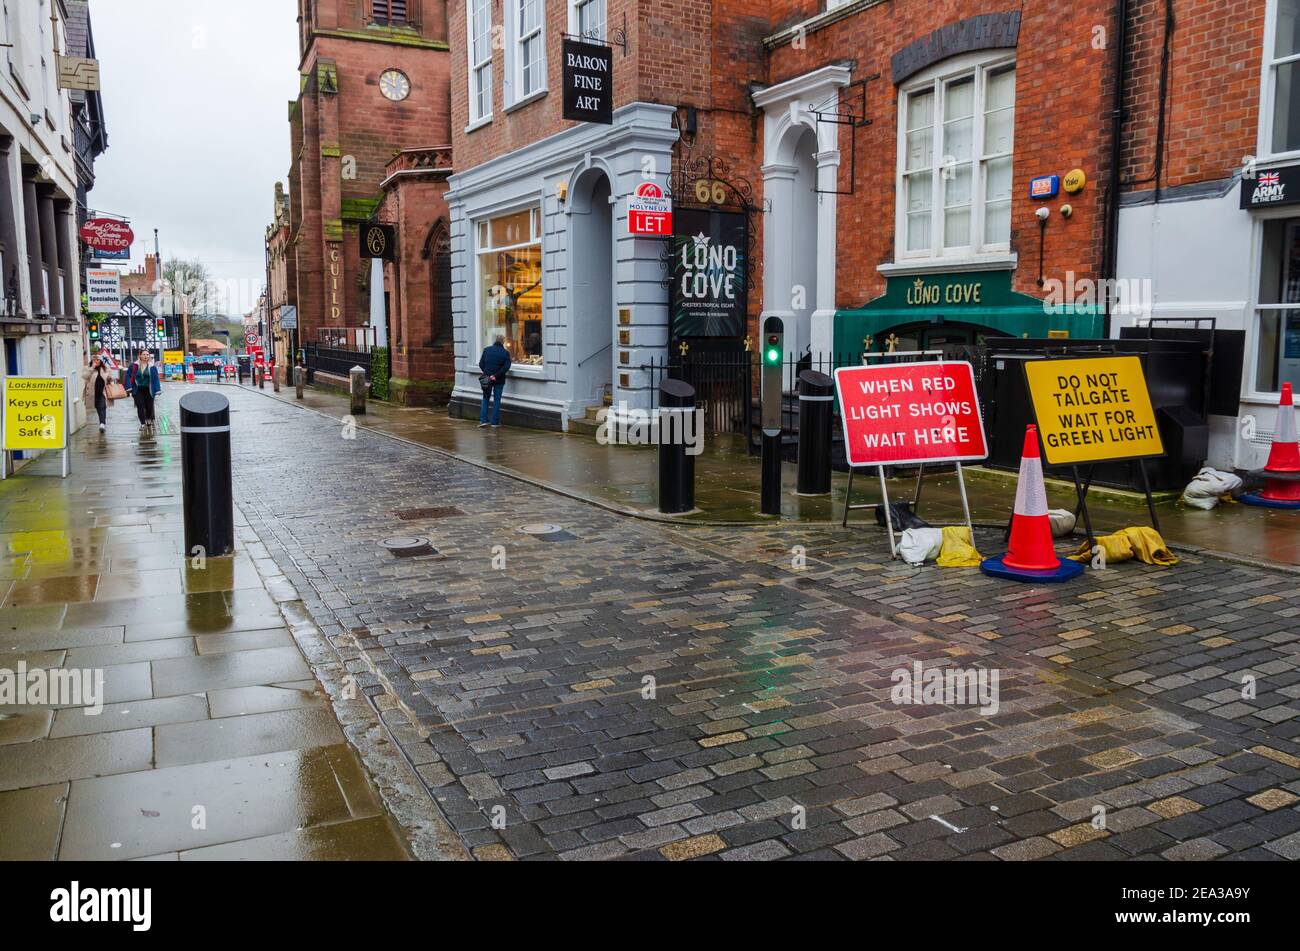 Chester; Royaume-Uni: 29 janvier 2021: Un système de bollards anti-terroristes a été installé dans certaines rues du centre-ville de Chester. Signalisation pour contrôler le trafic f Banque D'Images